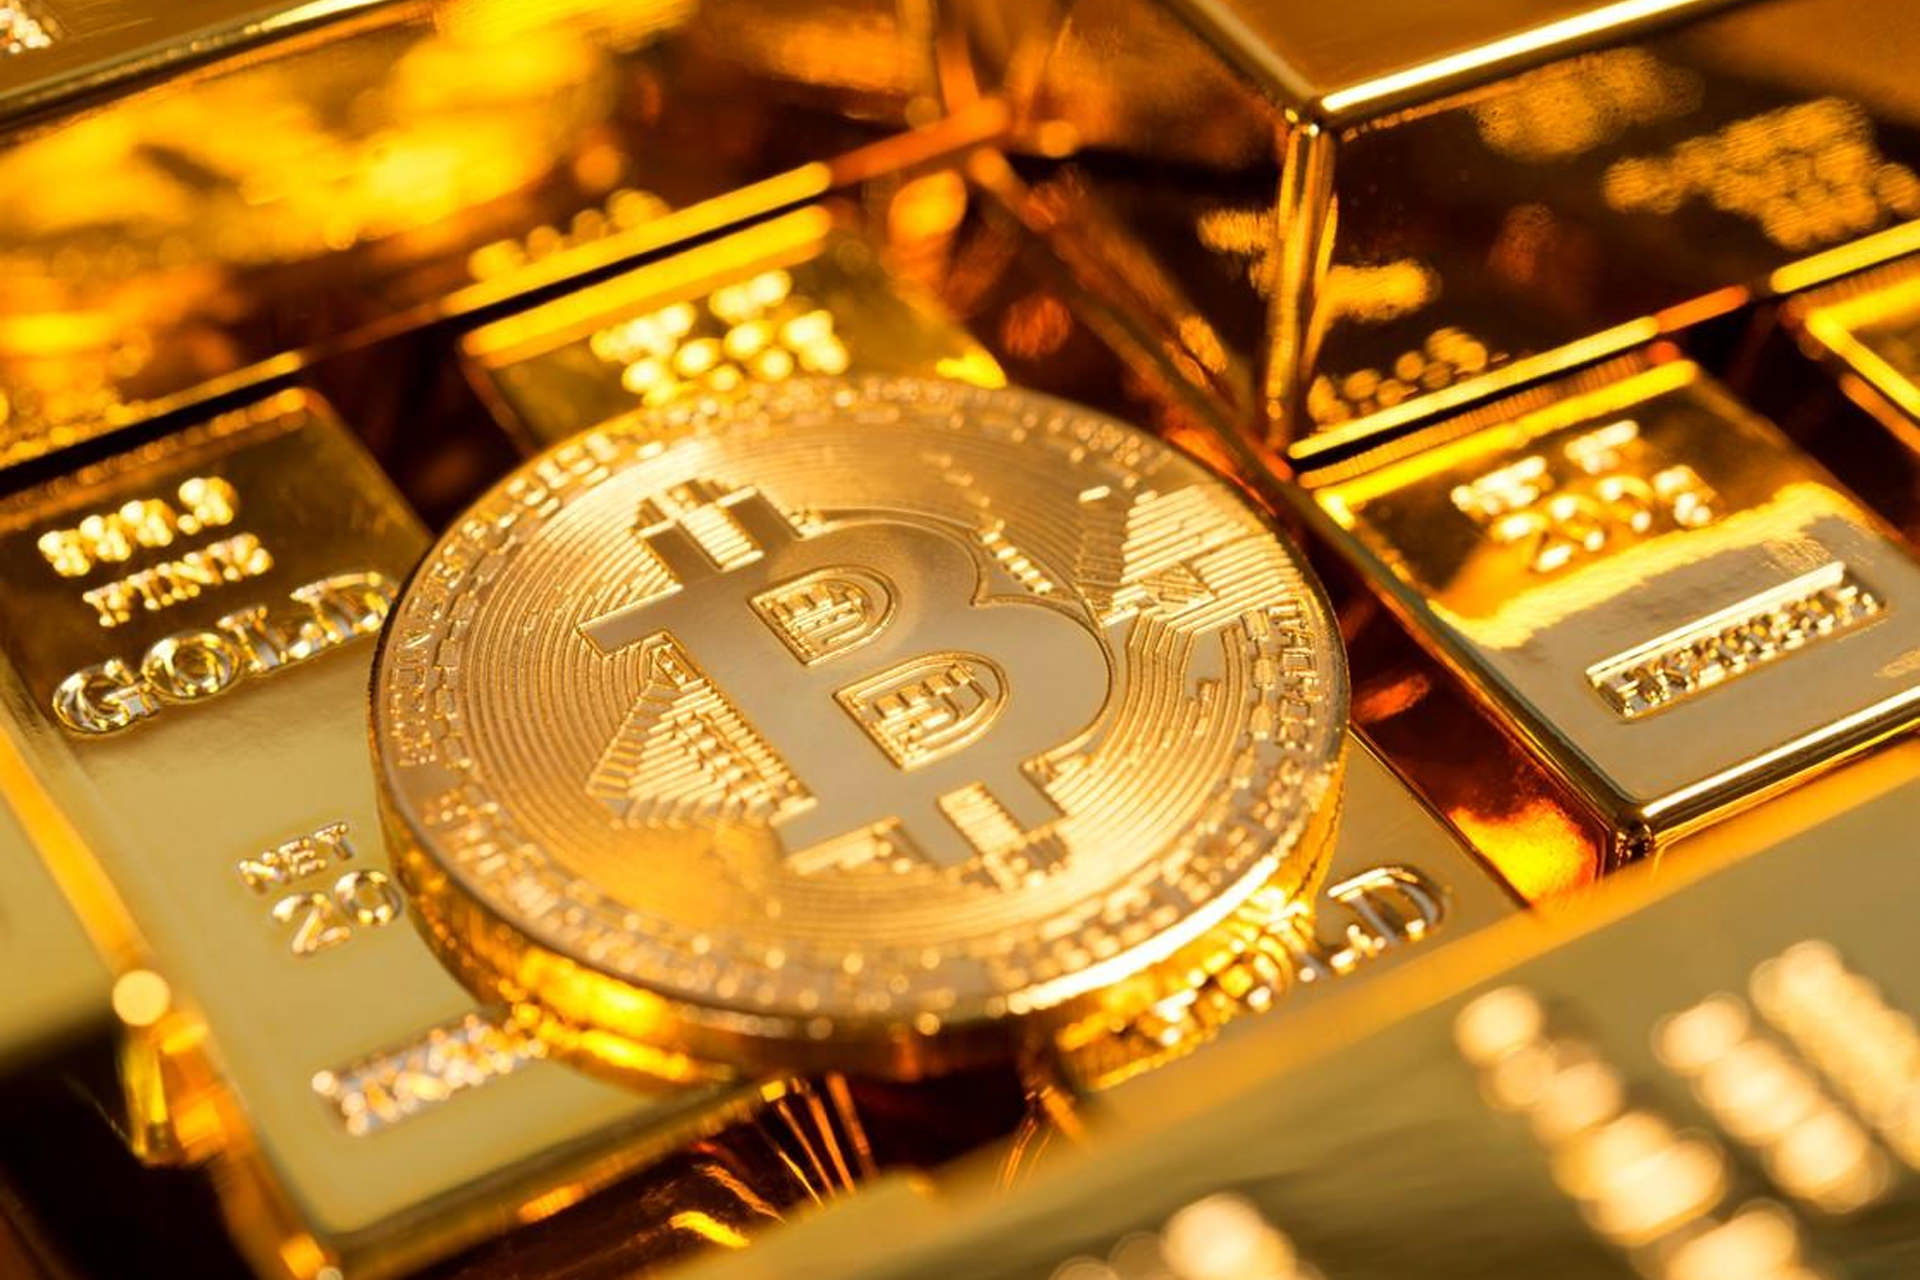 سکه بیت کوین / Bitcoin / بیتکوین در کنار شمش طلا